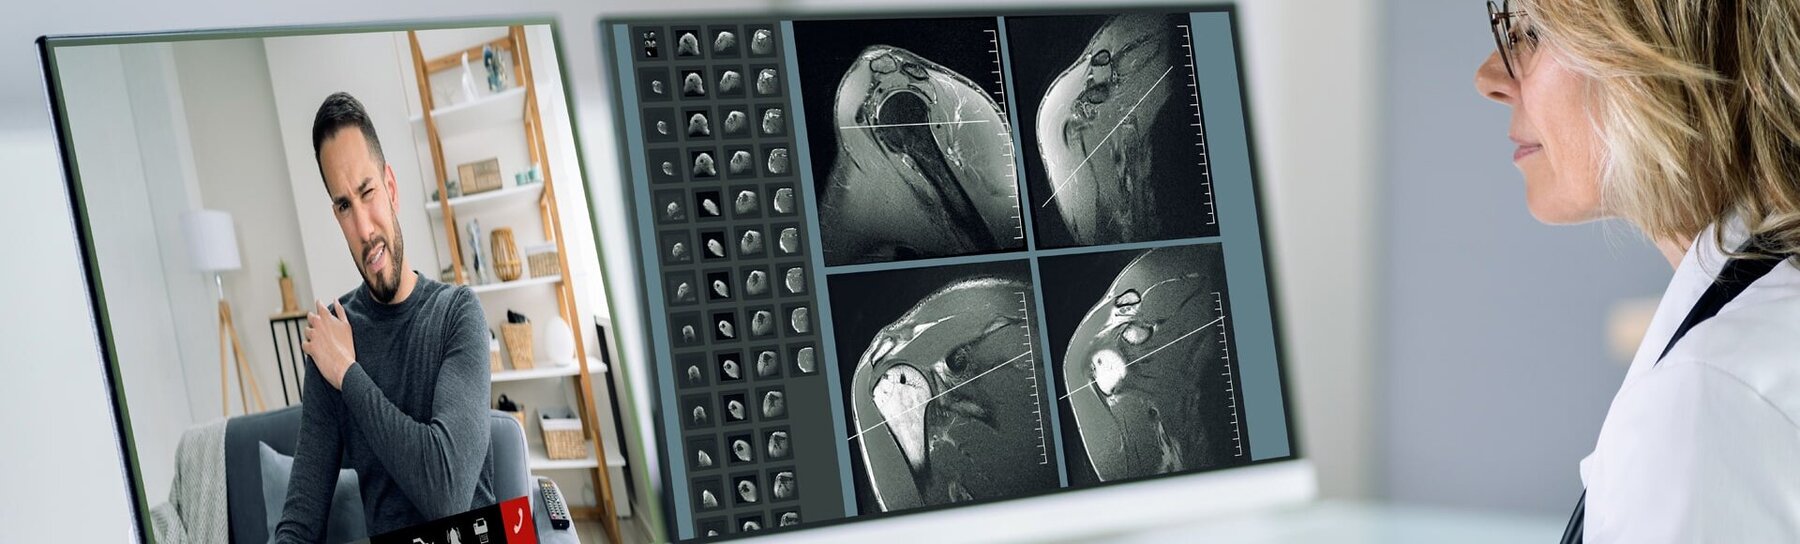 Ärztin betrachtet Röntgenbilder eines Patienten. Intelligente ITK-Lösungen, die das Wohlbefinden der Patienten und Bewohner stärken.